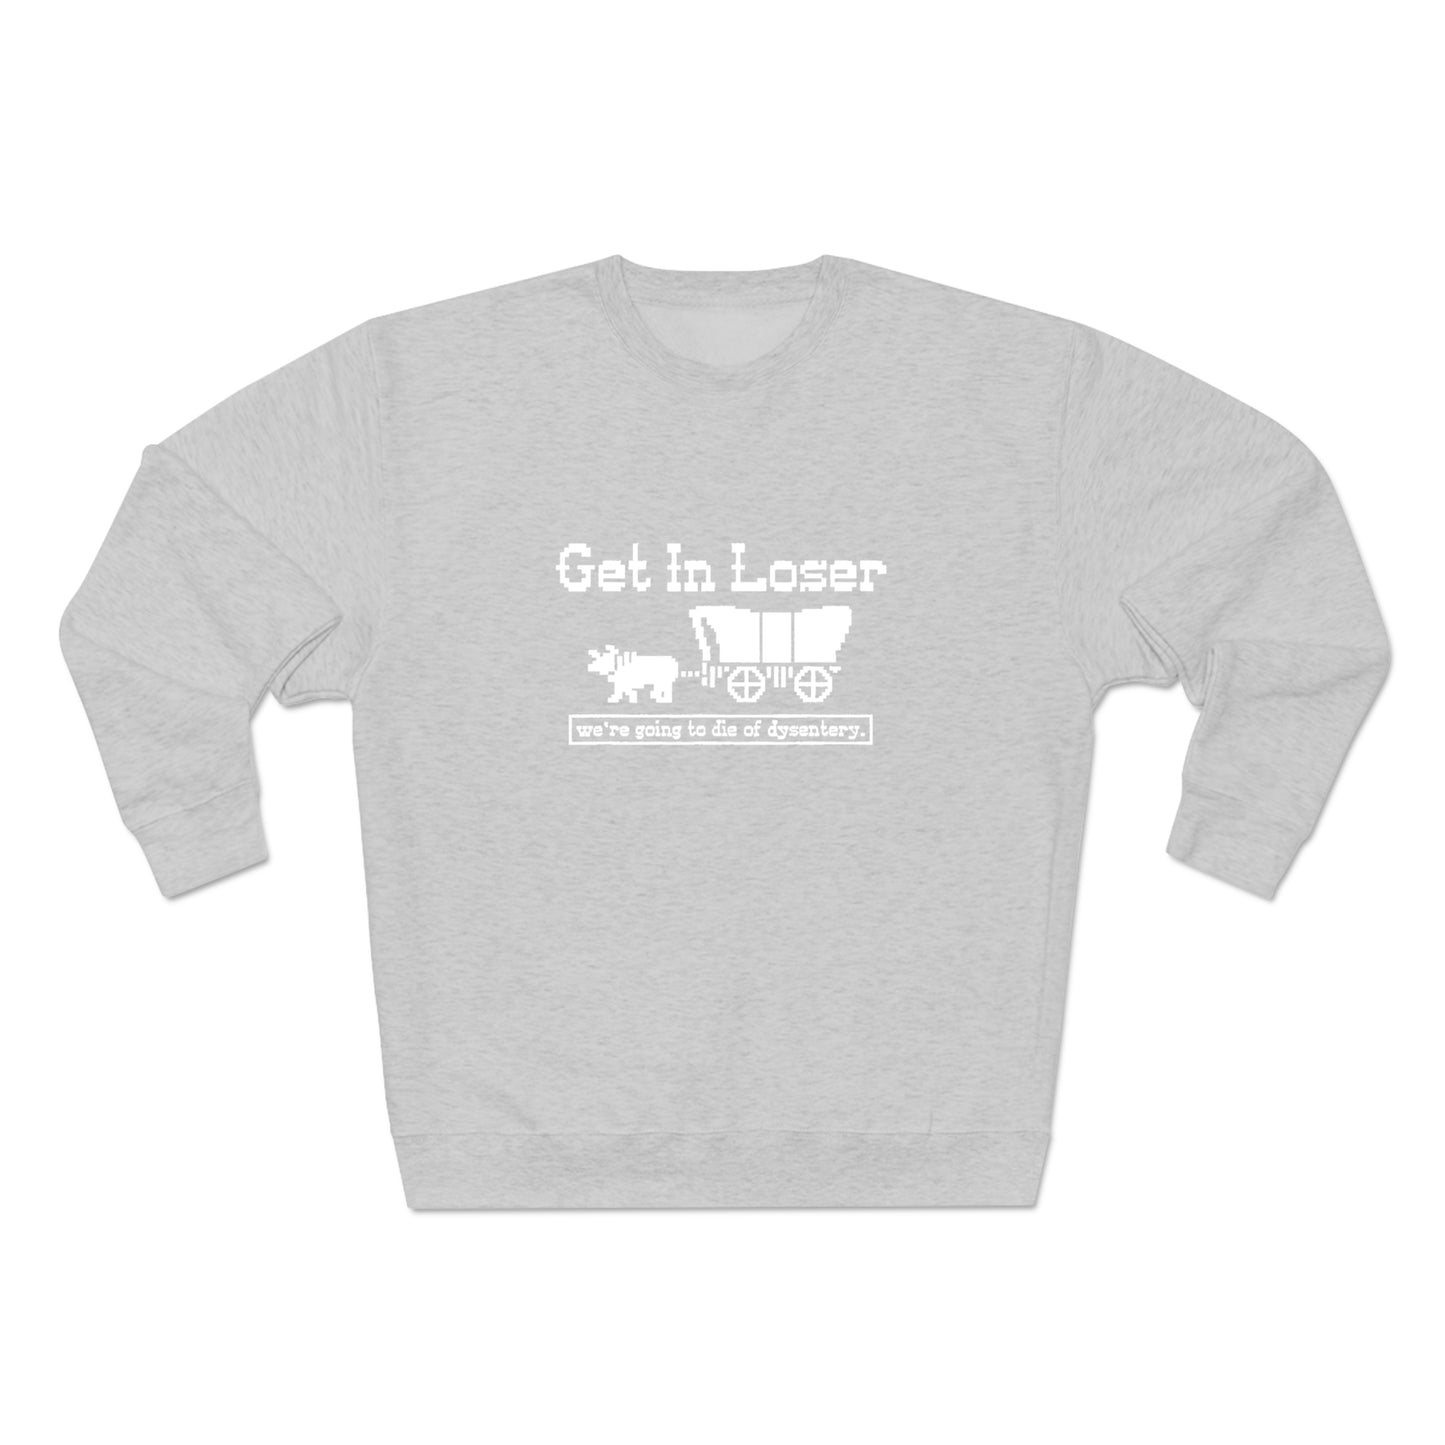 Get In Loser sweatshirt